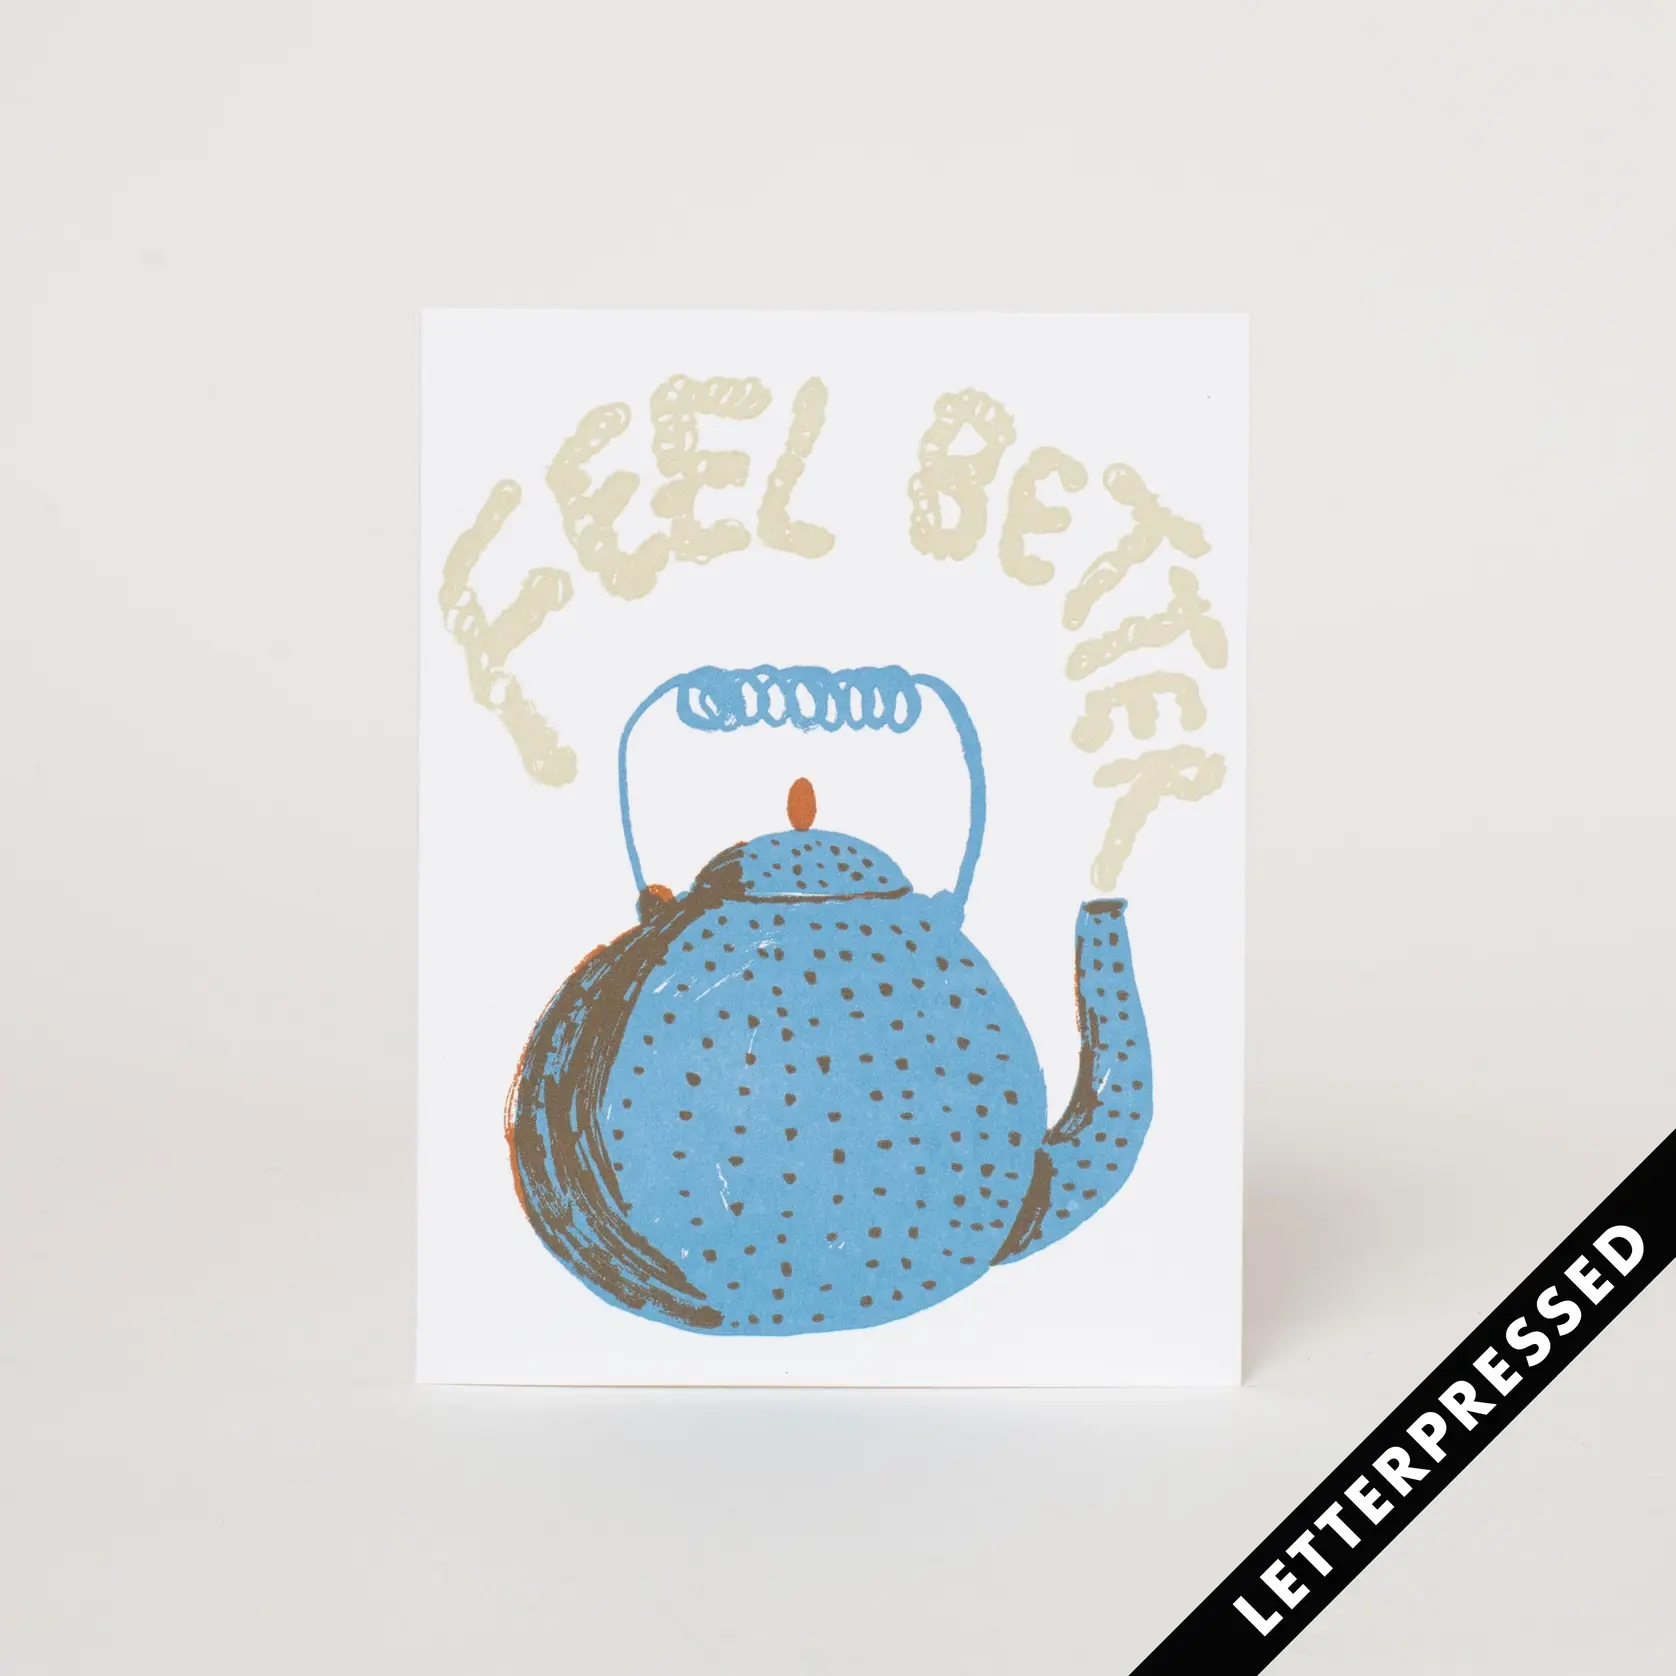 Egg Press - EP EPGCGW - Feel Better Teapot Card